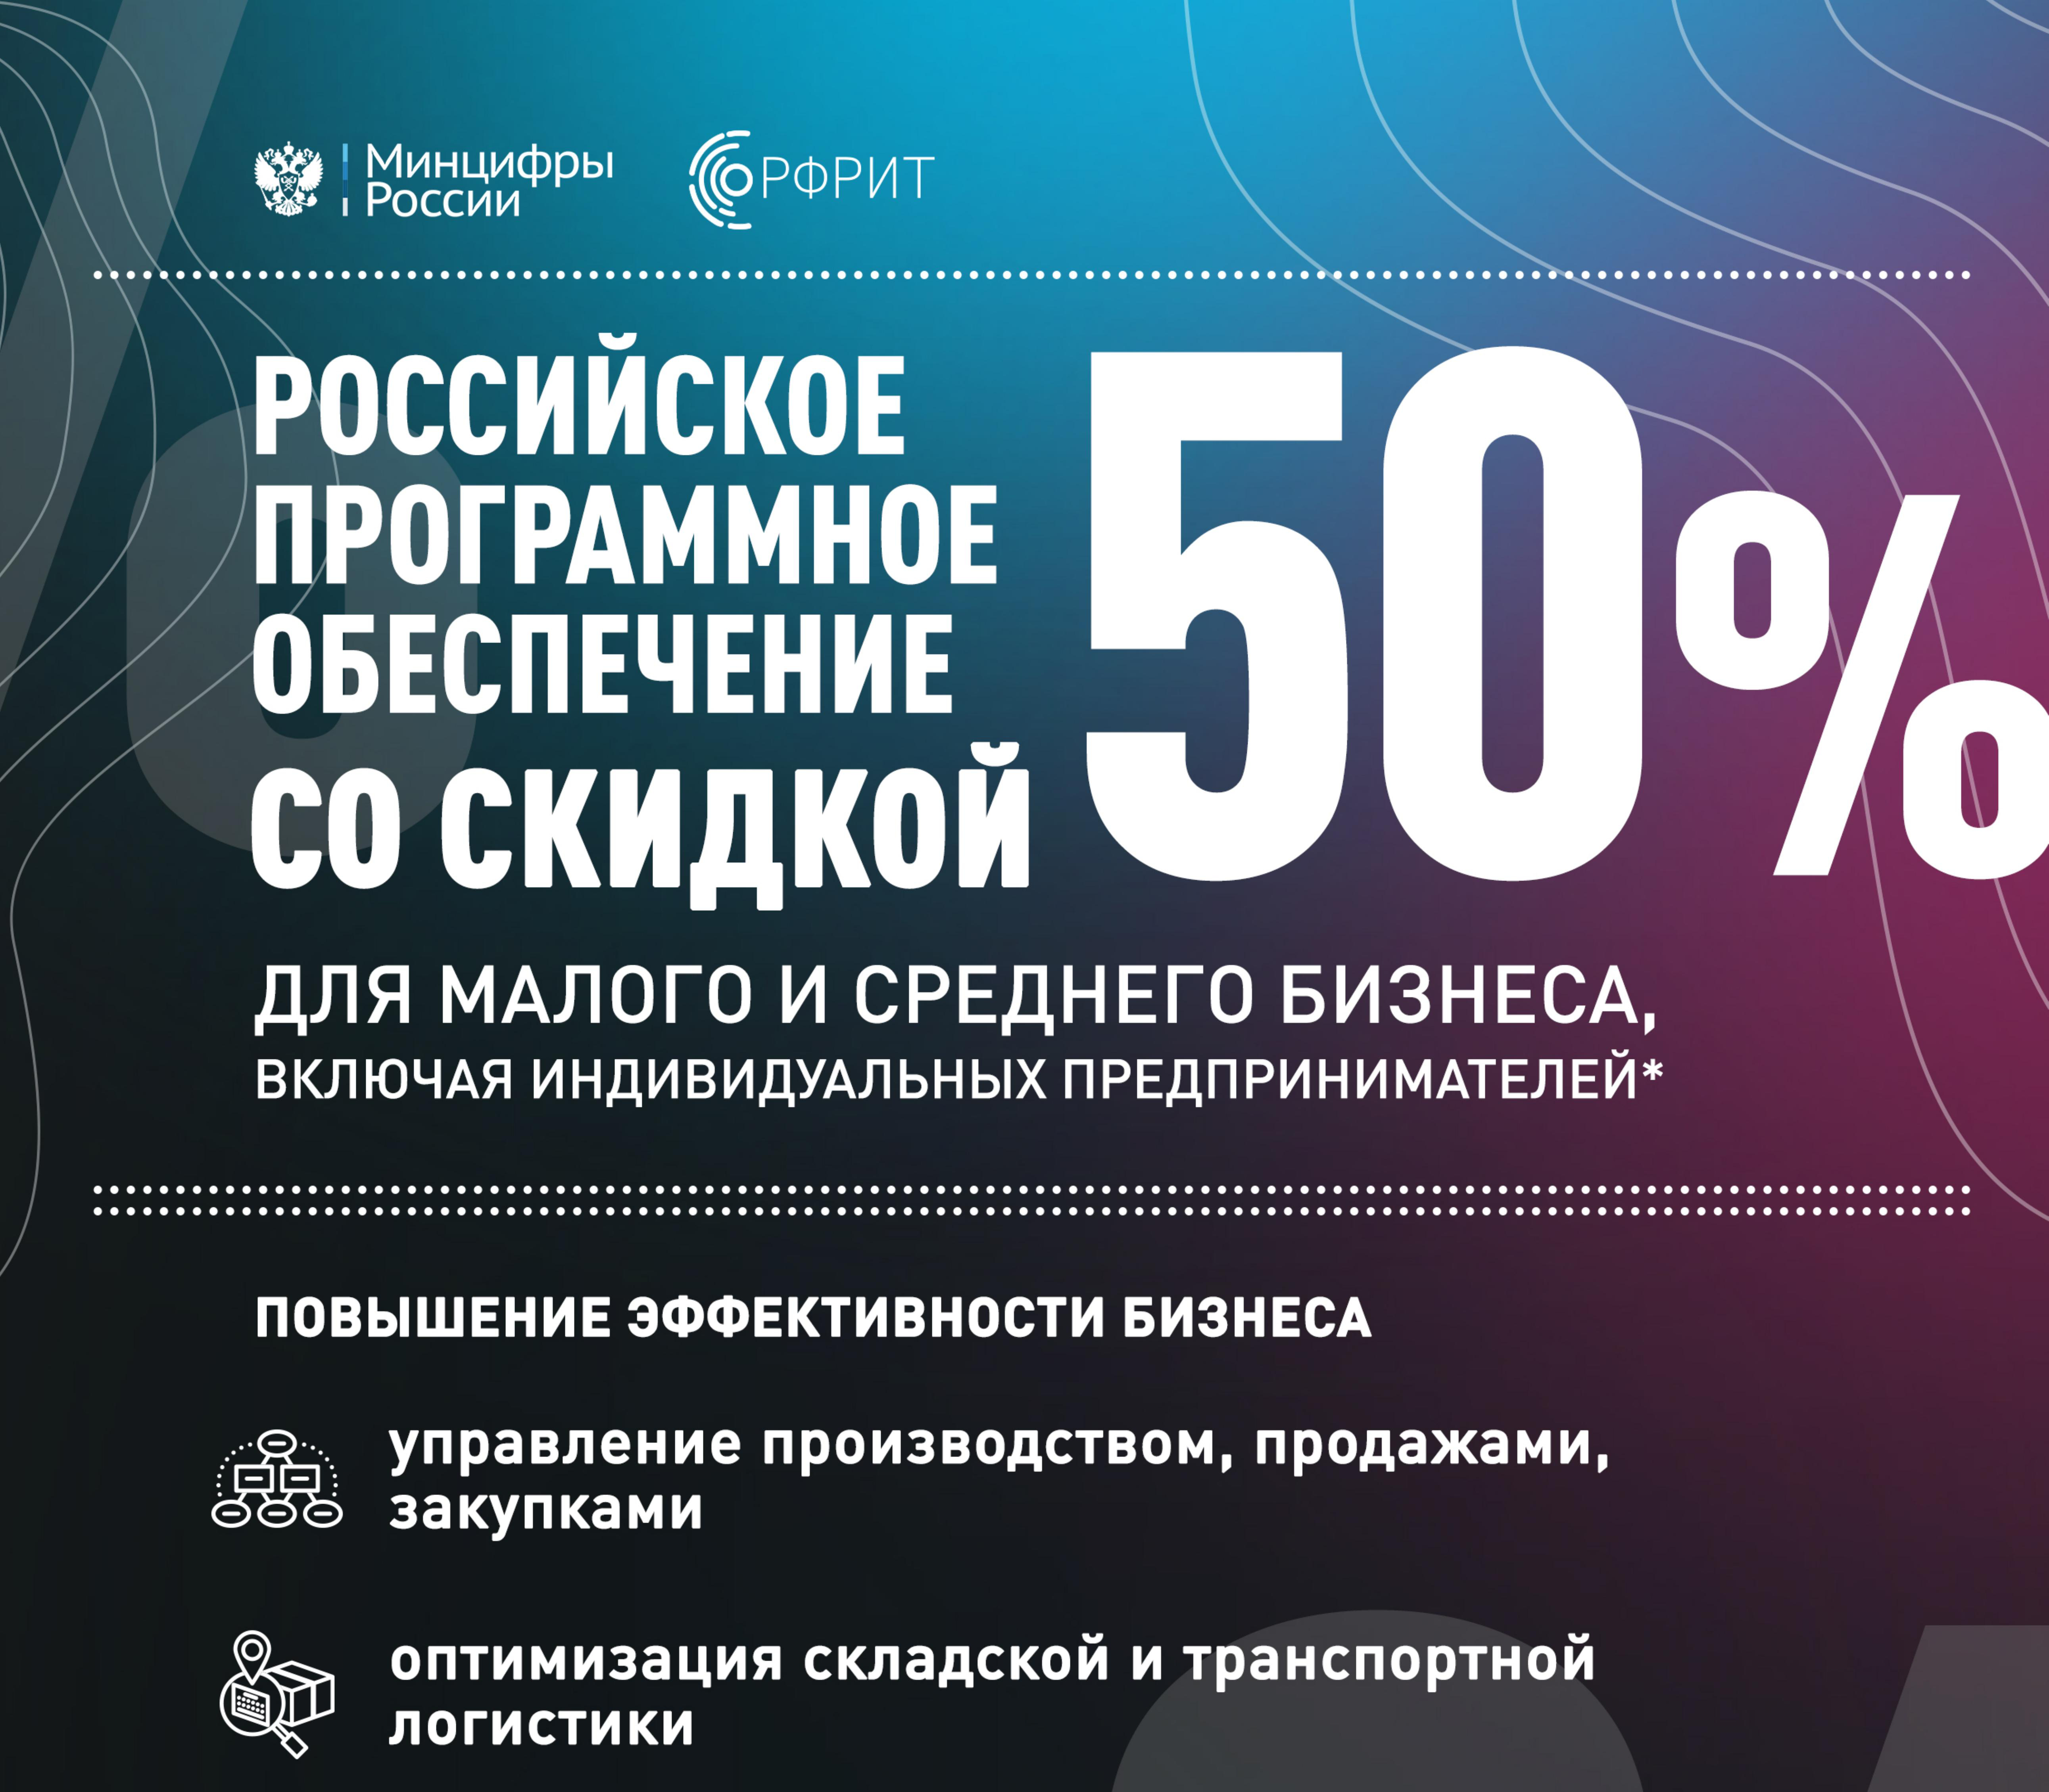 Минцифры России запустил новый механизм поддержки малого и среднего бизнеса — компании смогут приобретать программное обеспечение вдвое дешевле за счет компенсации 50% стоимости лицензии производителям.